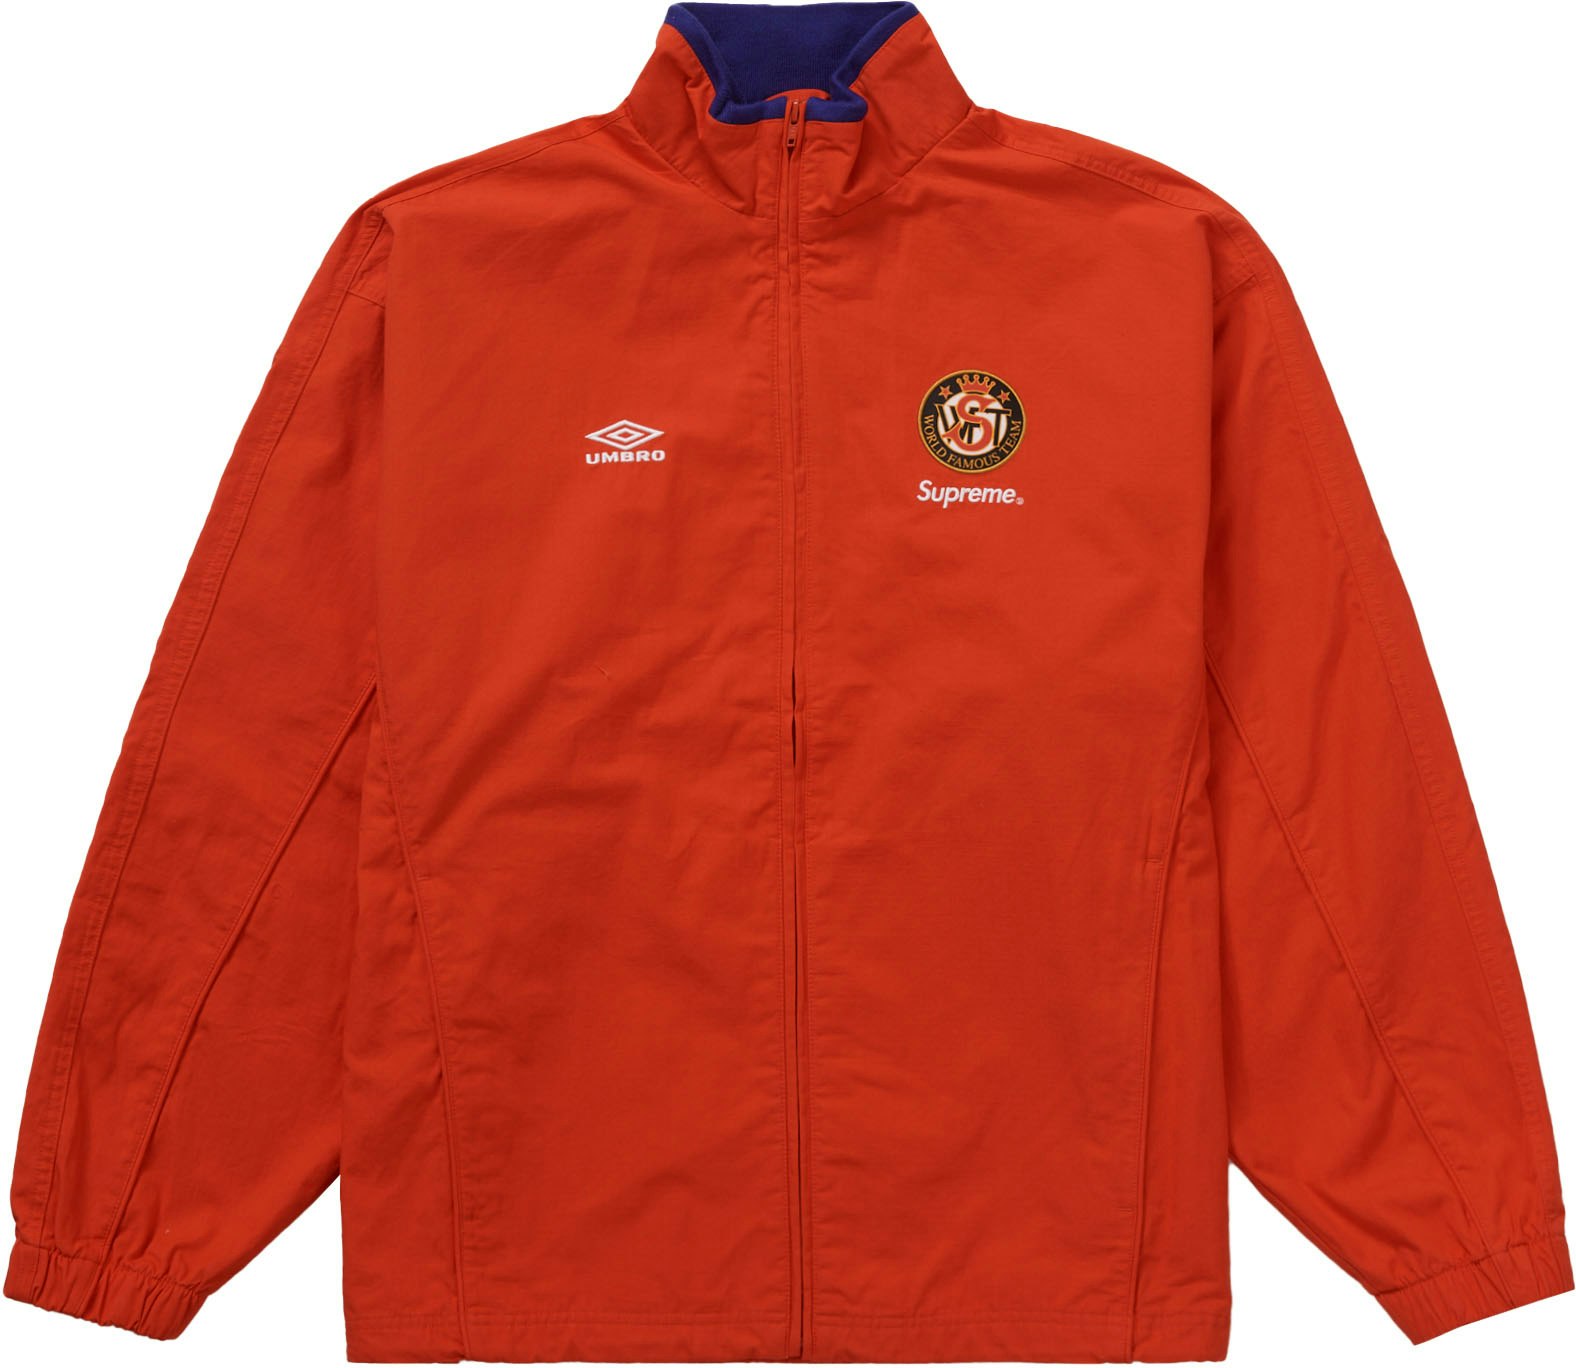 Supreme Umbro Cotton Ripstop Track Jacket Red - Novelship